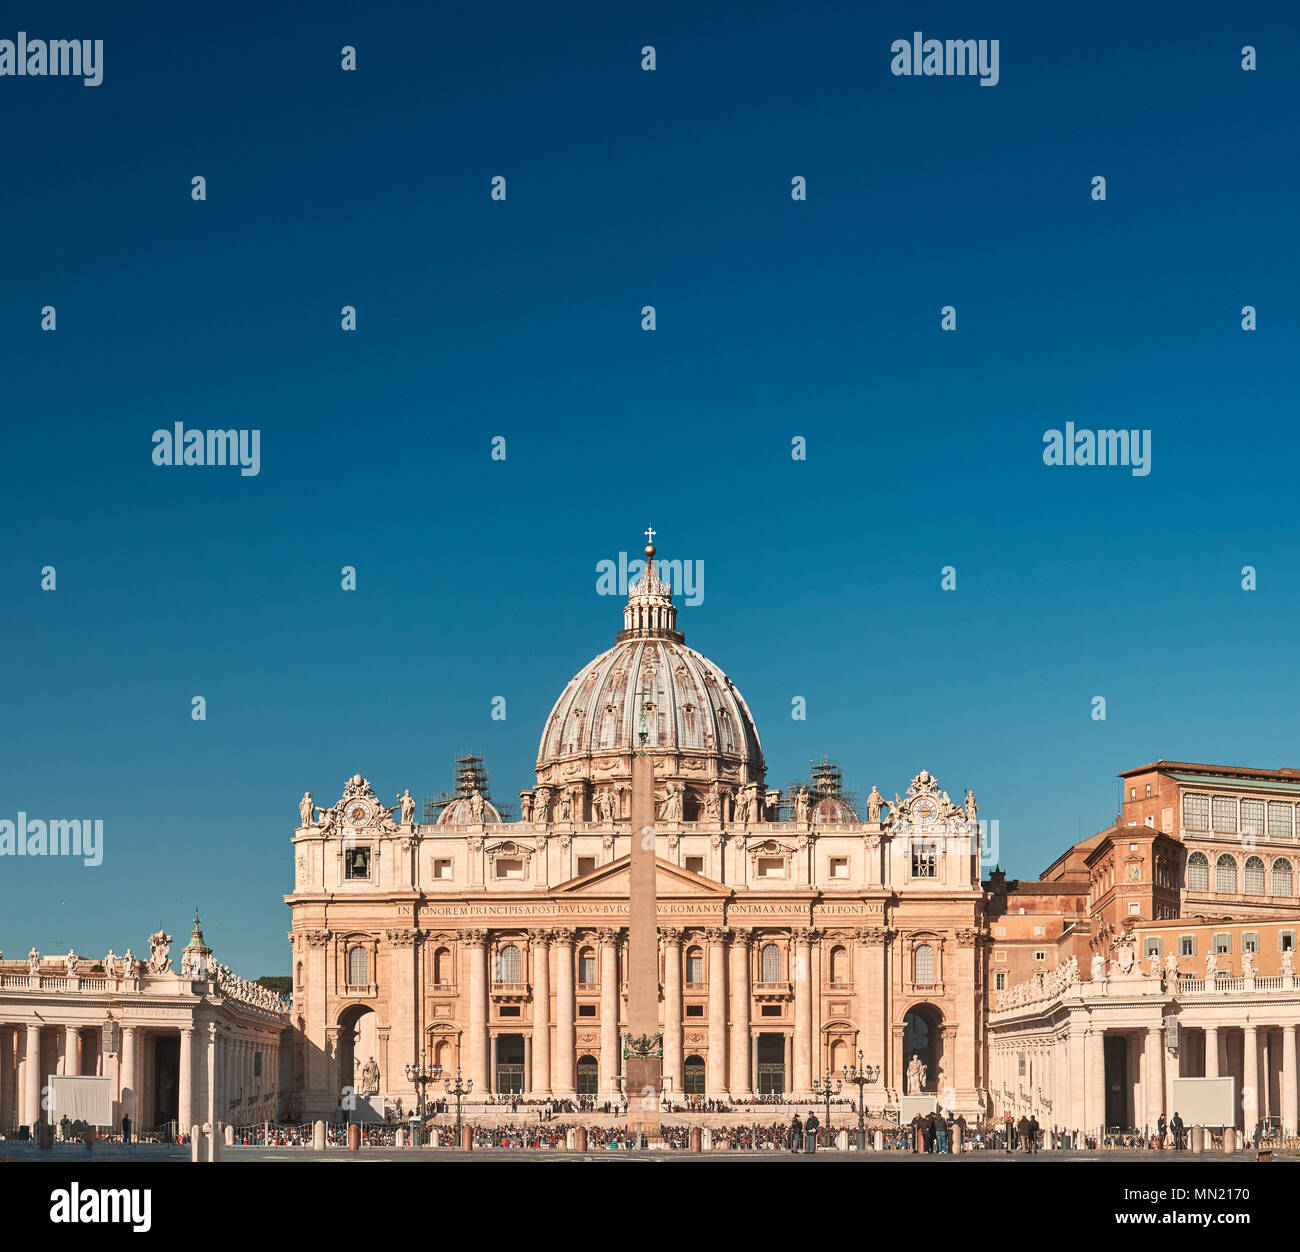 Roma, Basilica di San Pietro in Vaticano - Spazio di testo sulla parte superiore Foto Stock